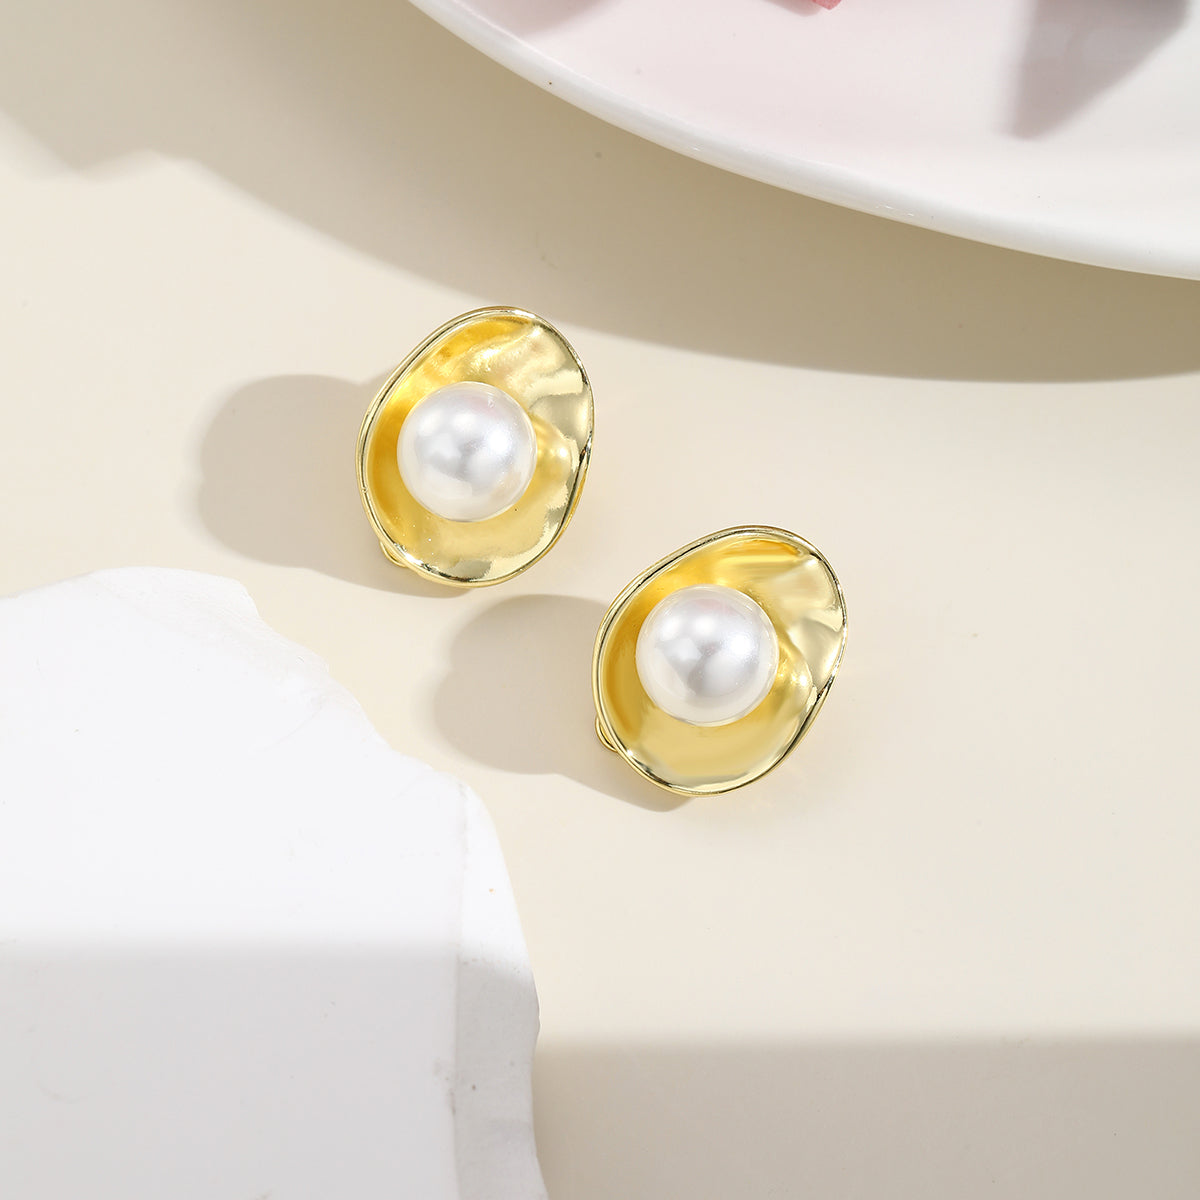 Pearl & 18K Gold-Plated Lotus Huggie Earrings